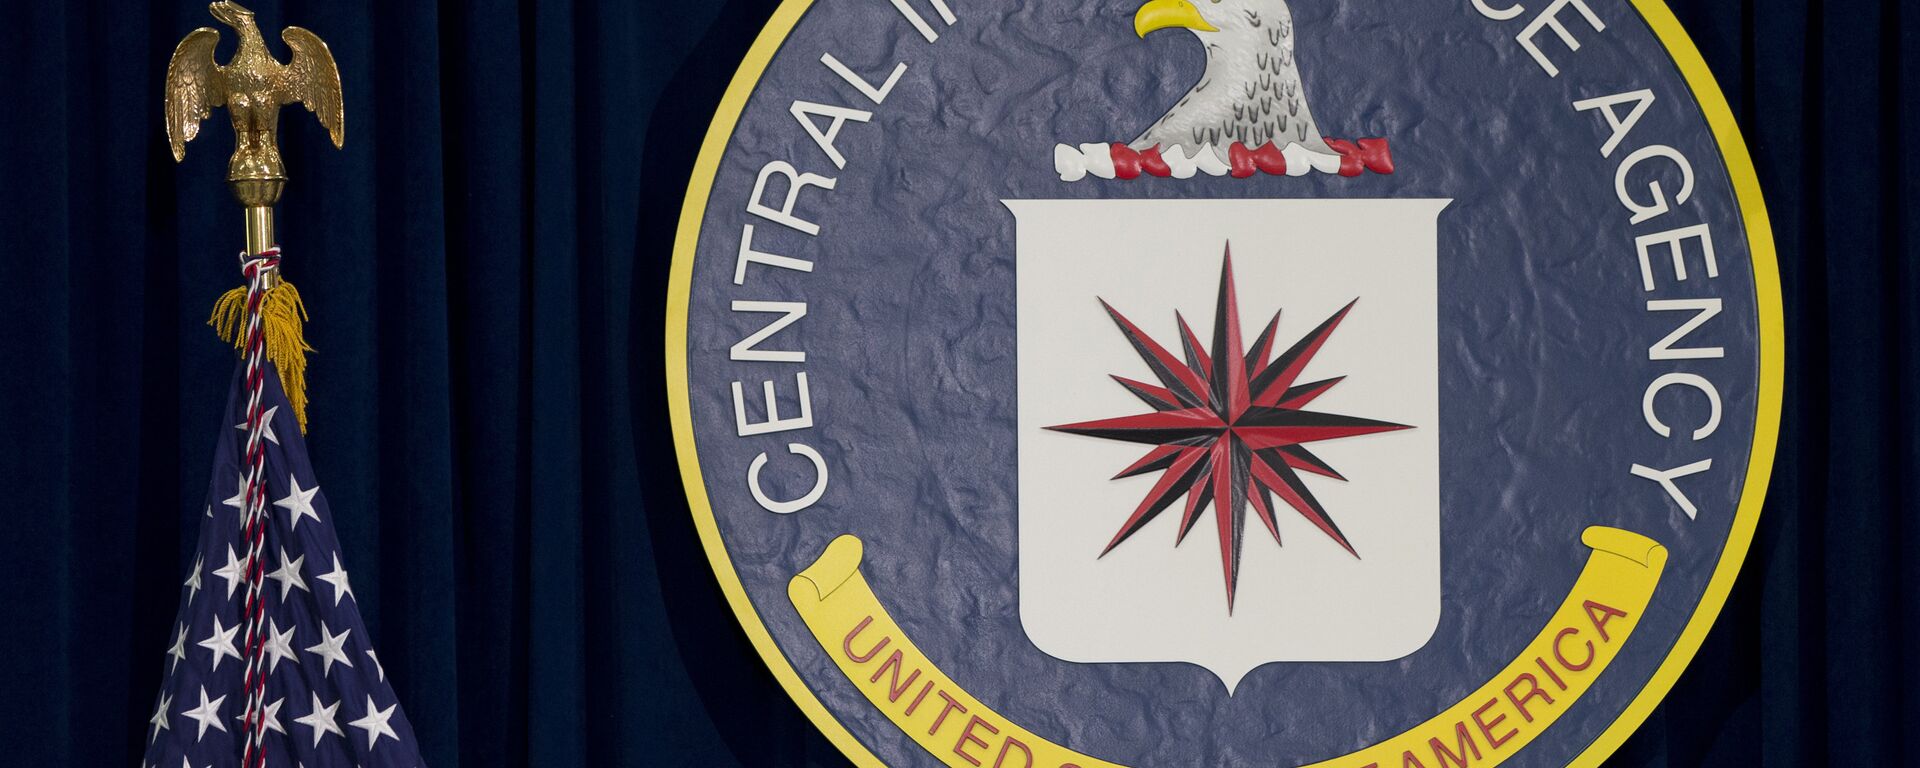 Emblema da CIA em sua sede em Langley, Virgínia, EUA - Sputnik Brasil, 1920, 26.09.2021